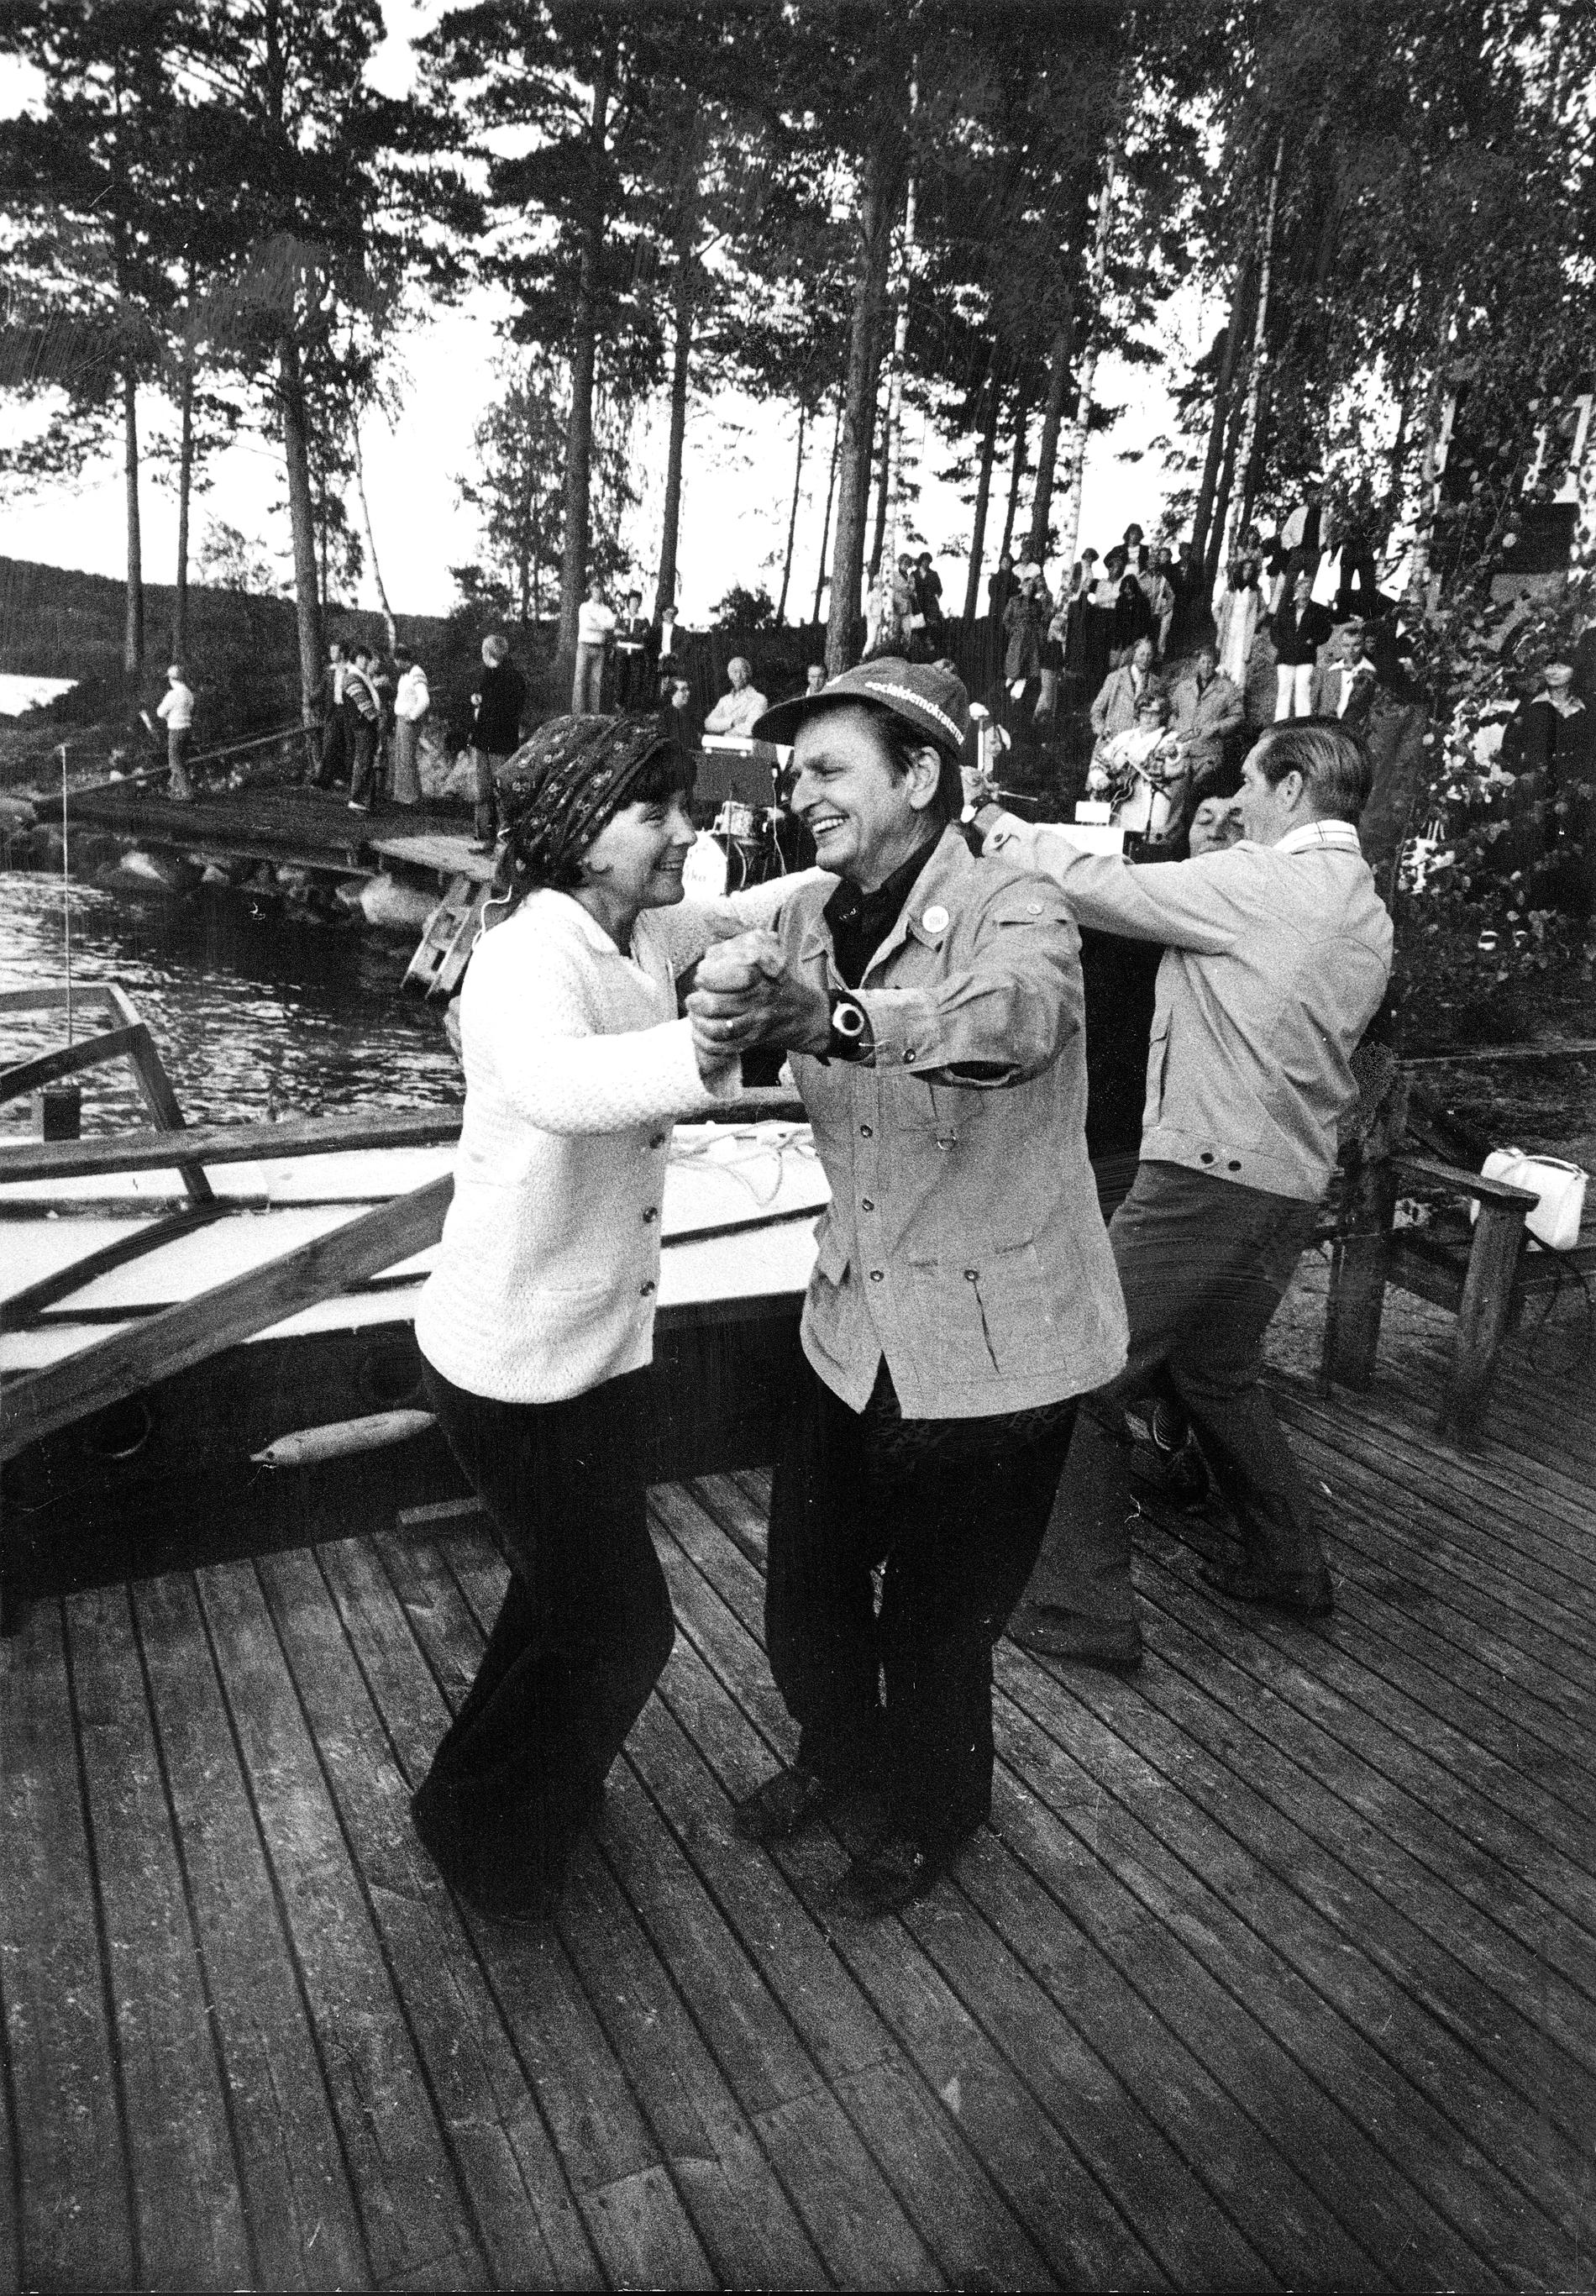 Olof och Lisbeth palme på valturne, avslutar lördagkvällen genom att dansa bryggdans i Bengtsfors 1976.